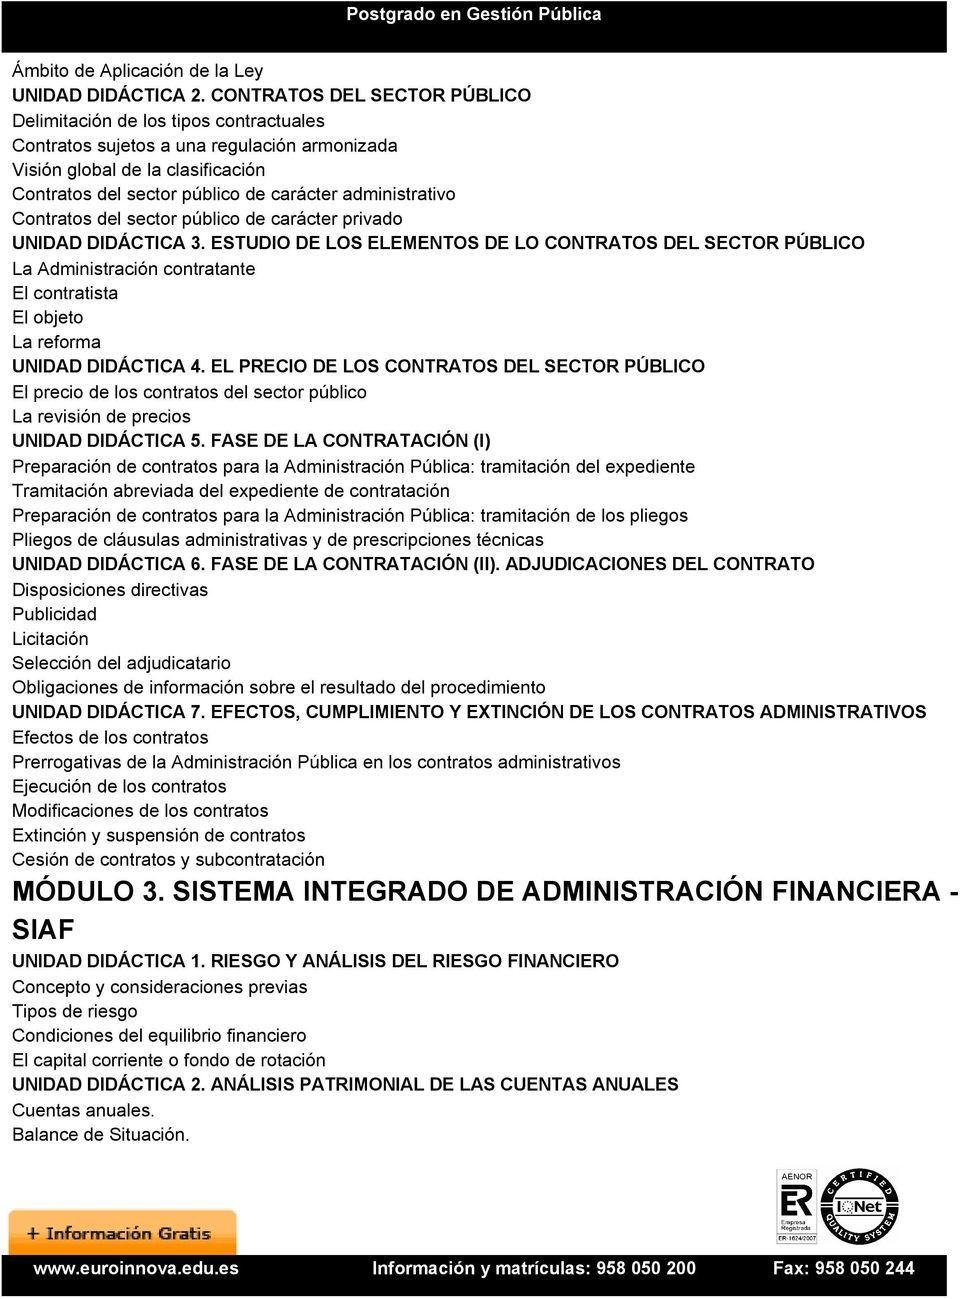 administrativo Contratos del sector público de carácter privado UNIDAD DIDÁCTICA 3.